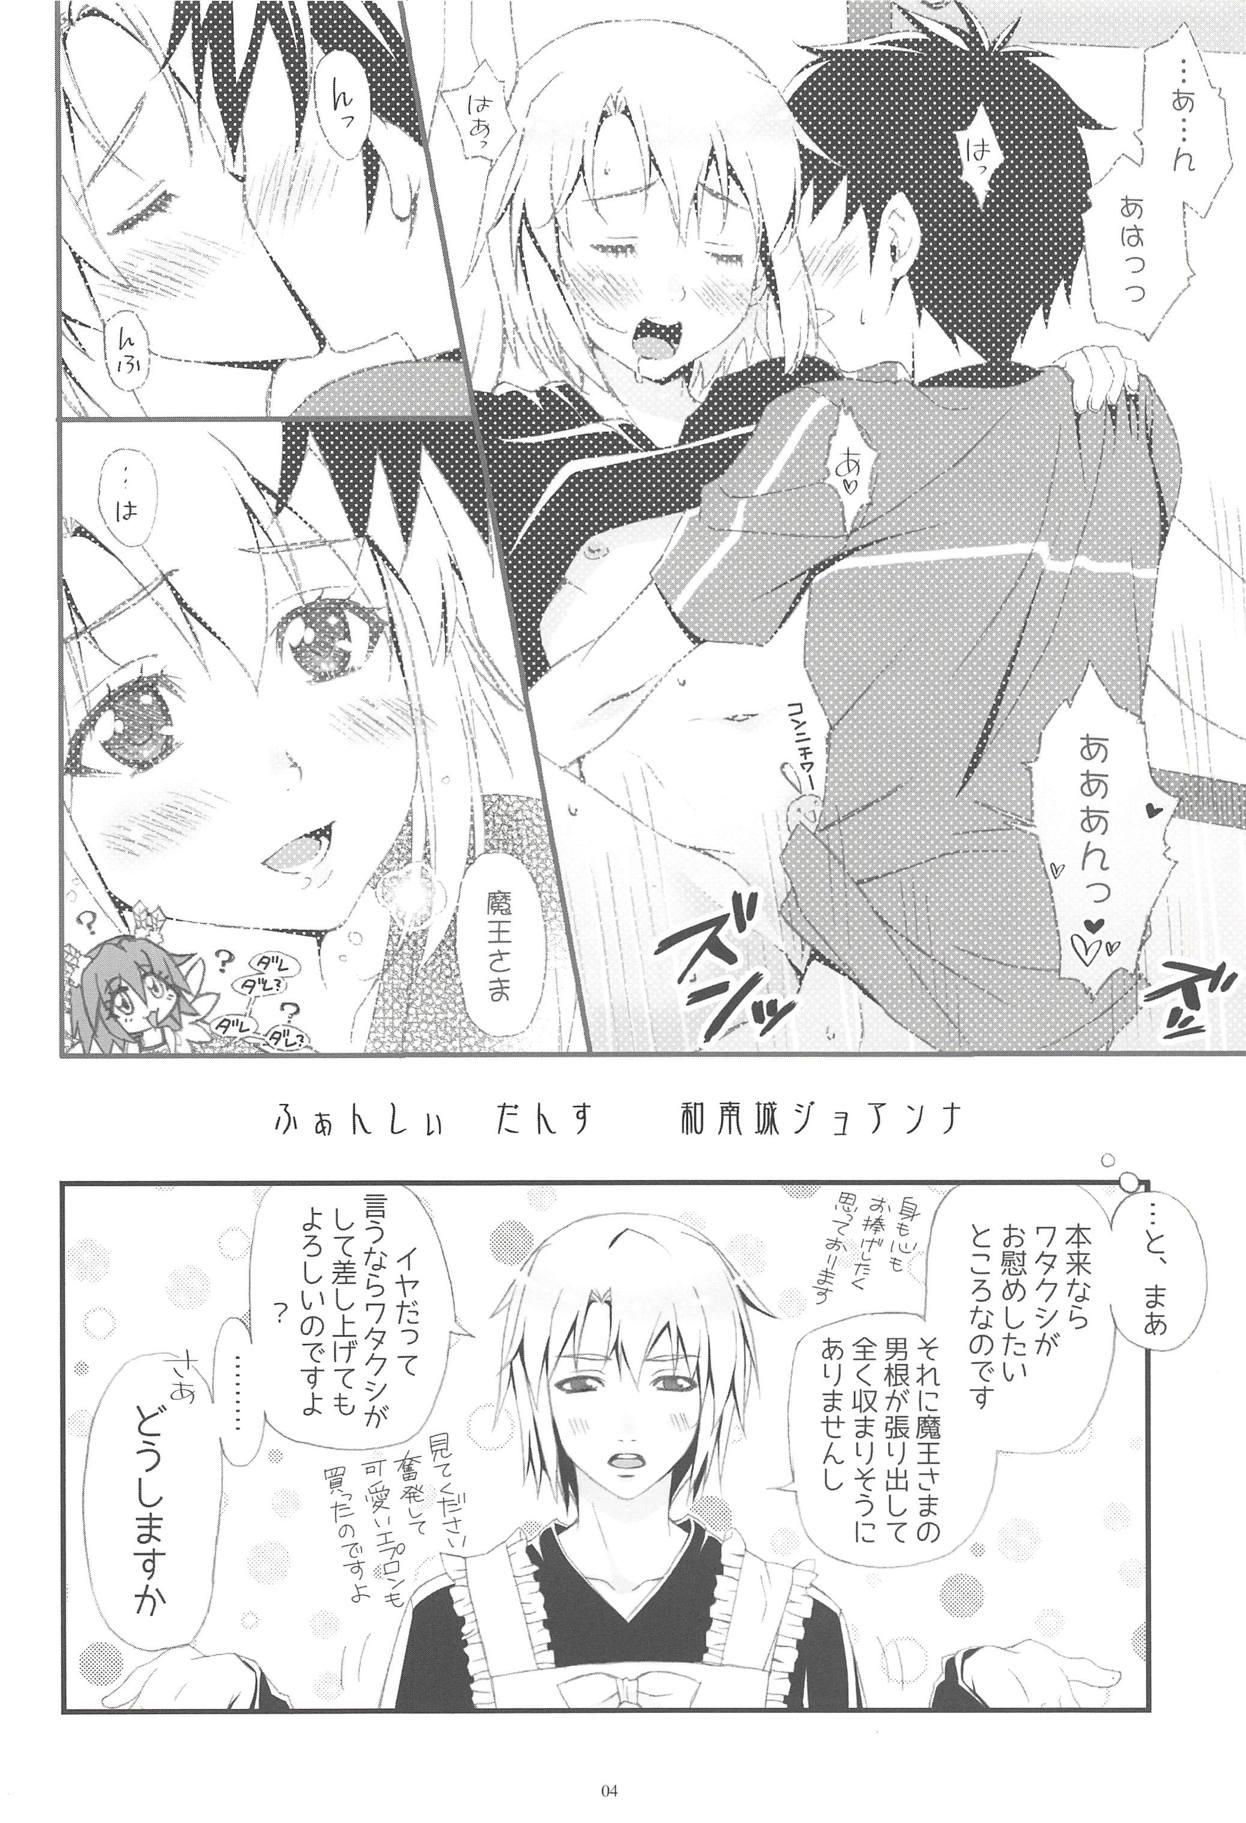 Camgirl Chii-chan Backspin - Hataraku maou sama Vagina - Page 3